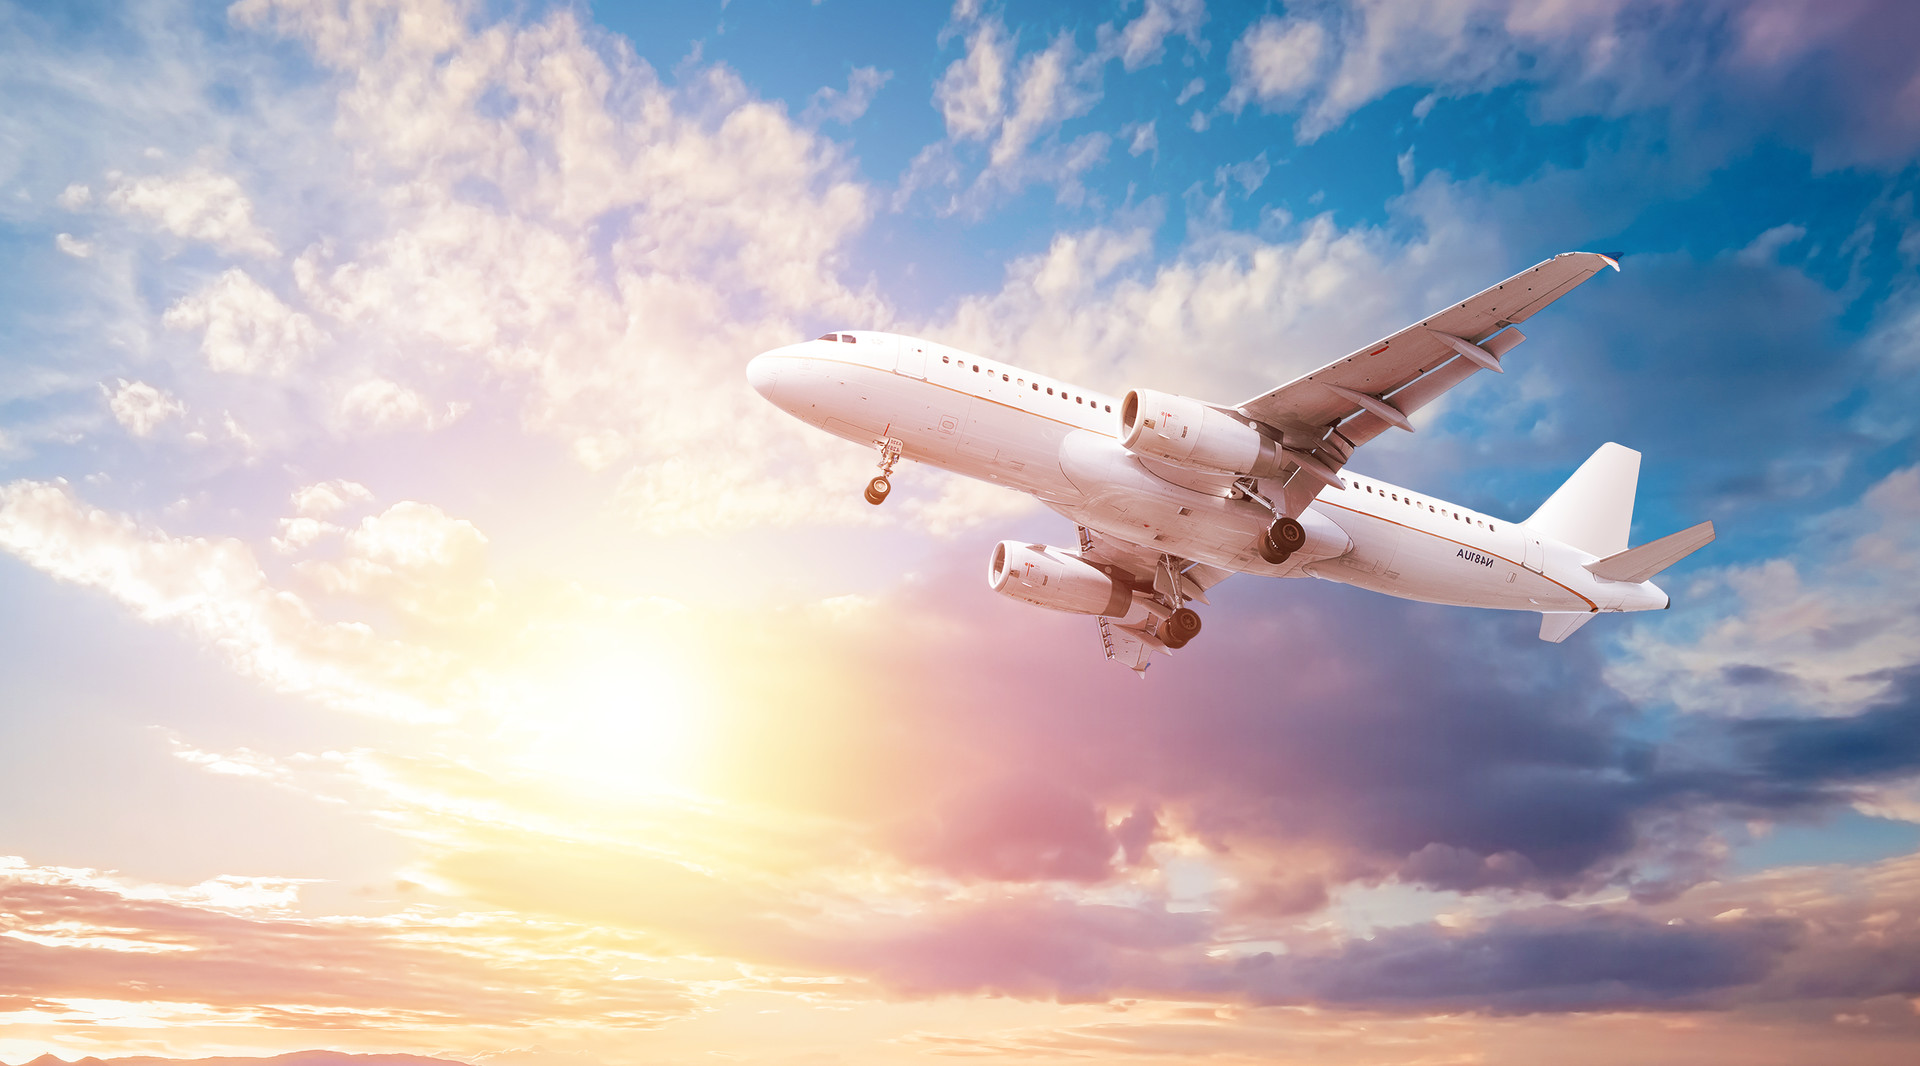 山东航空将新开16条国内航线 加密3条国际航线